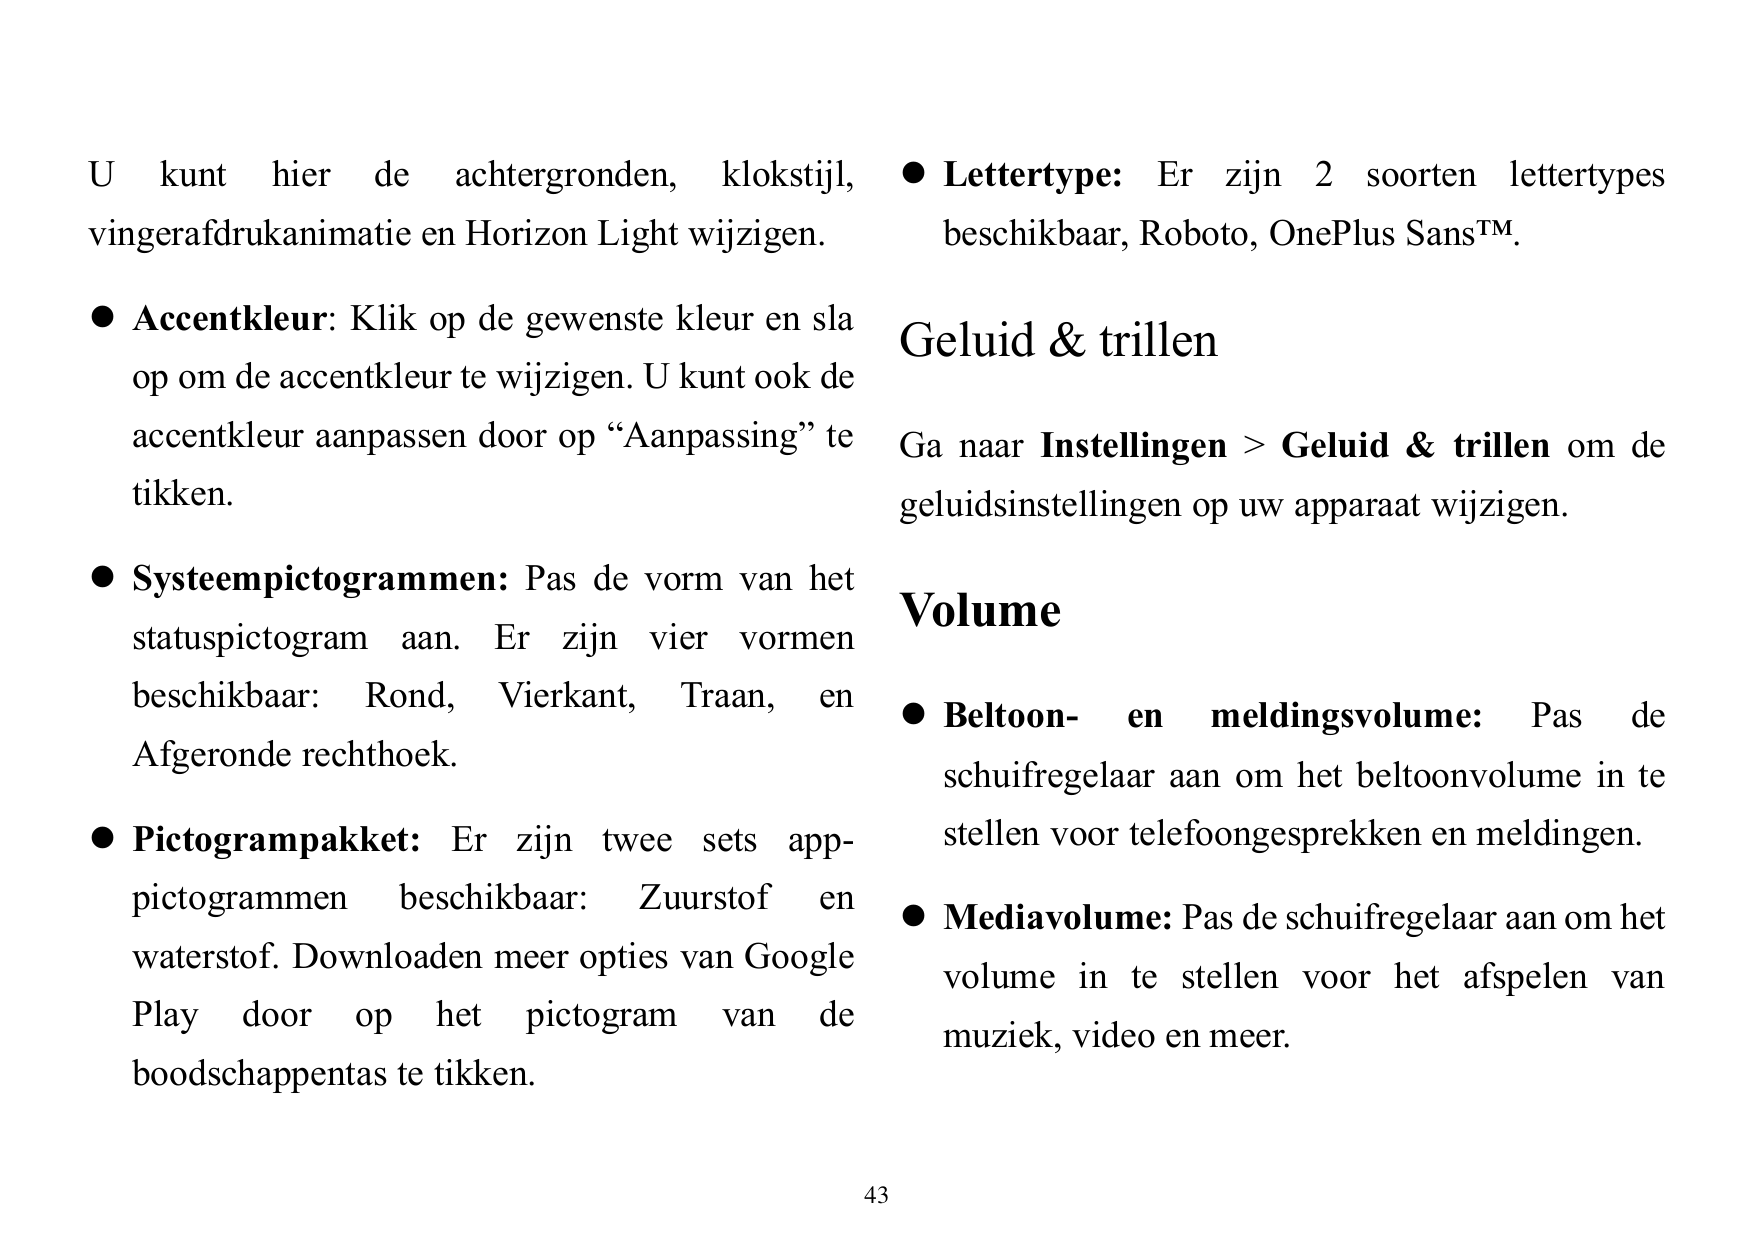 Ukunthierdeachtergronden,⚫ Lettertype: Er zijn 2 soorten lettertypesklokstijl,vingerafdrukanimatie en Horizon Light wijzigen.bes